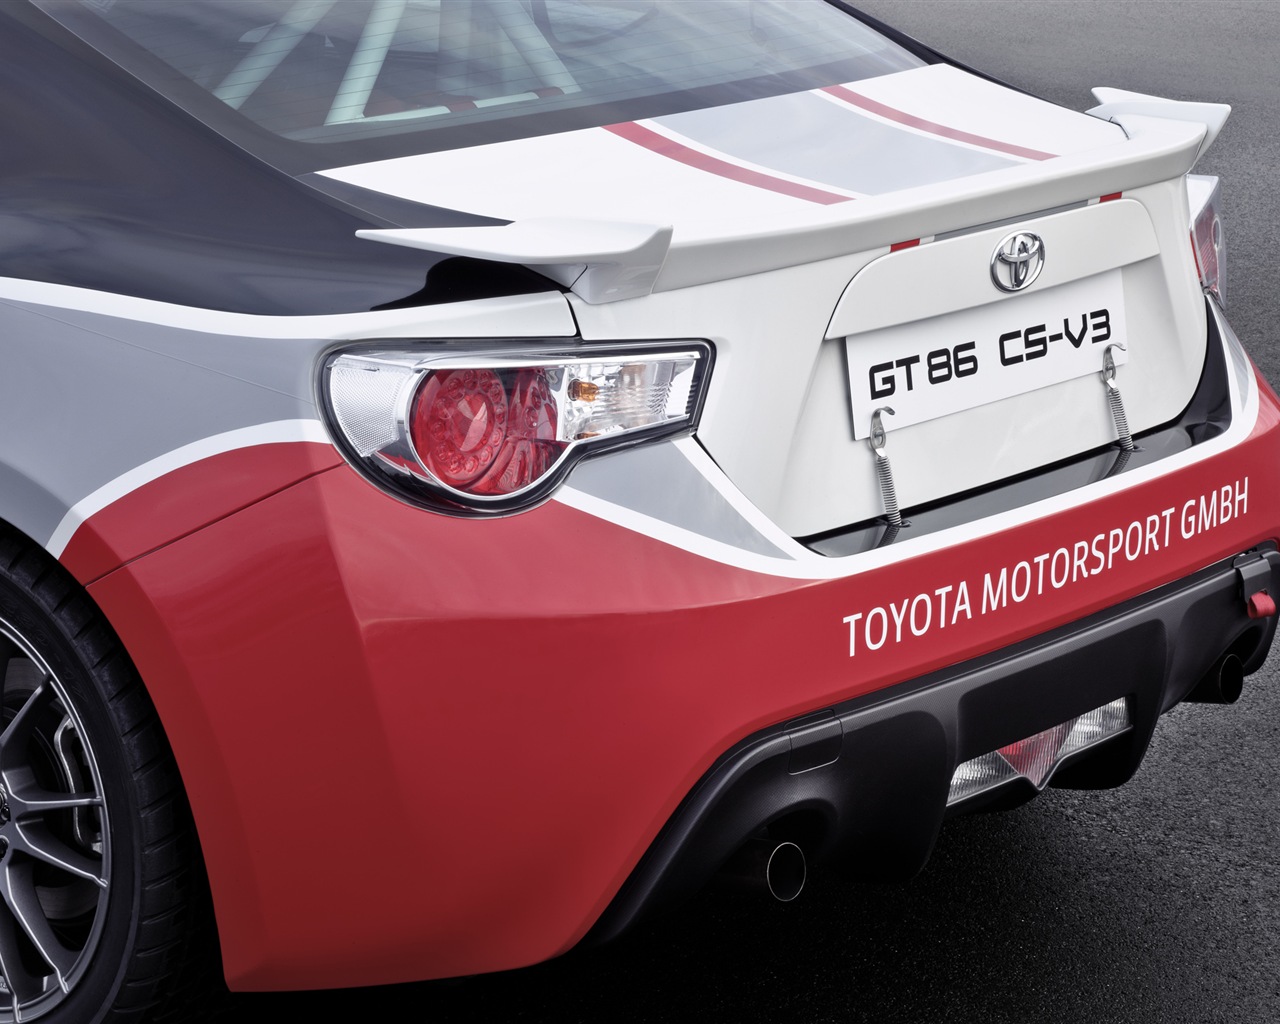 2012 Toyota GT86 CS-V3 HD fondos de pantalla #20 - 1280x1024